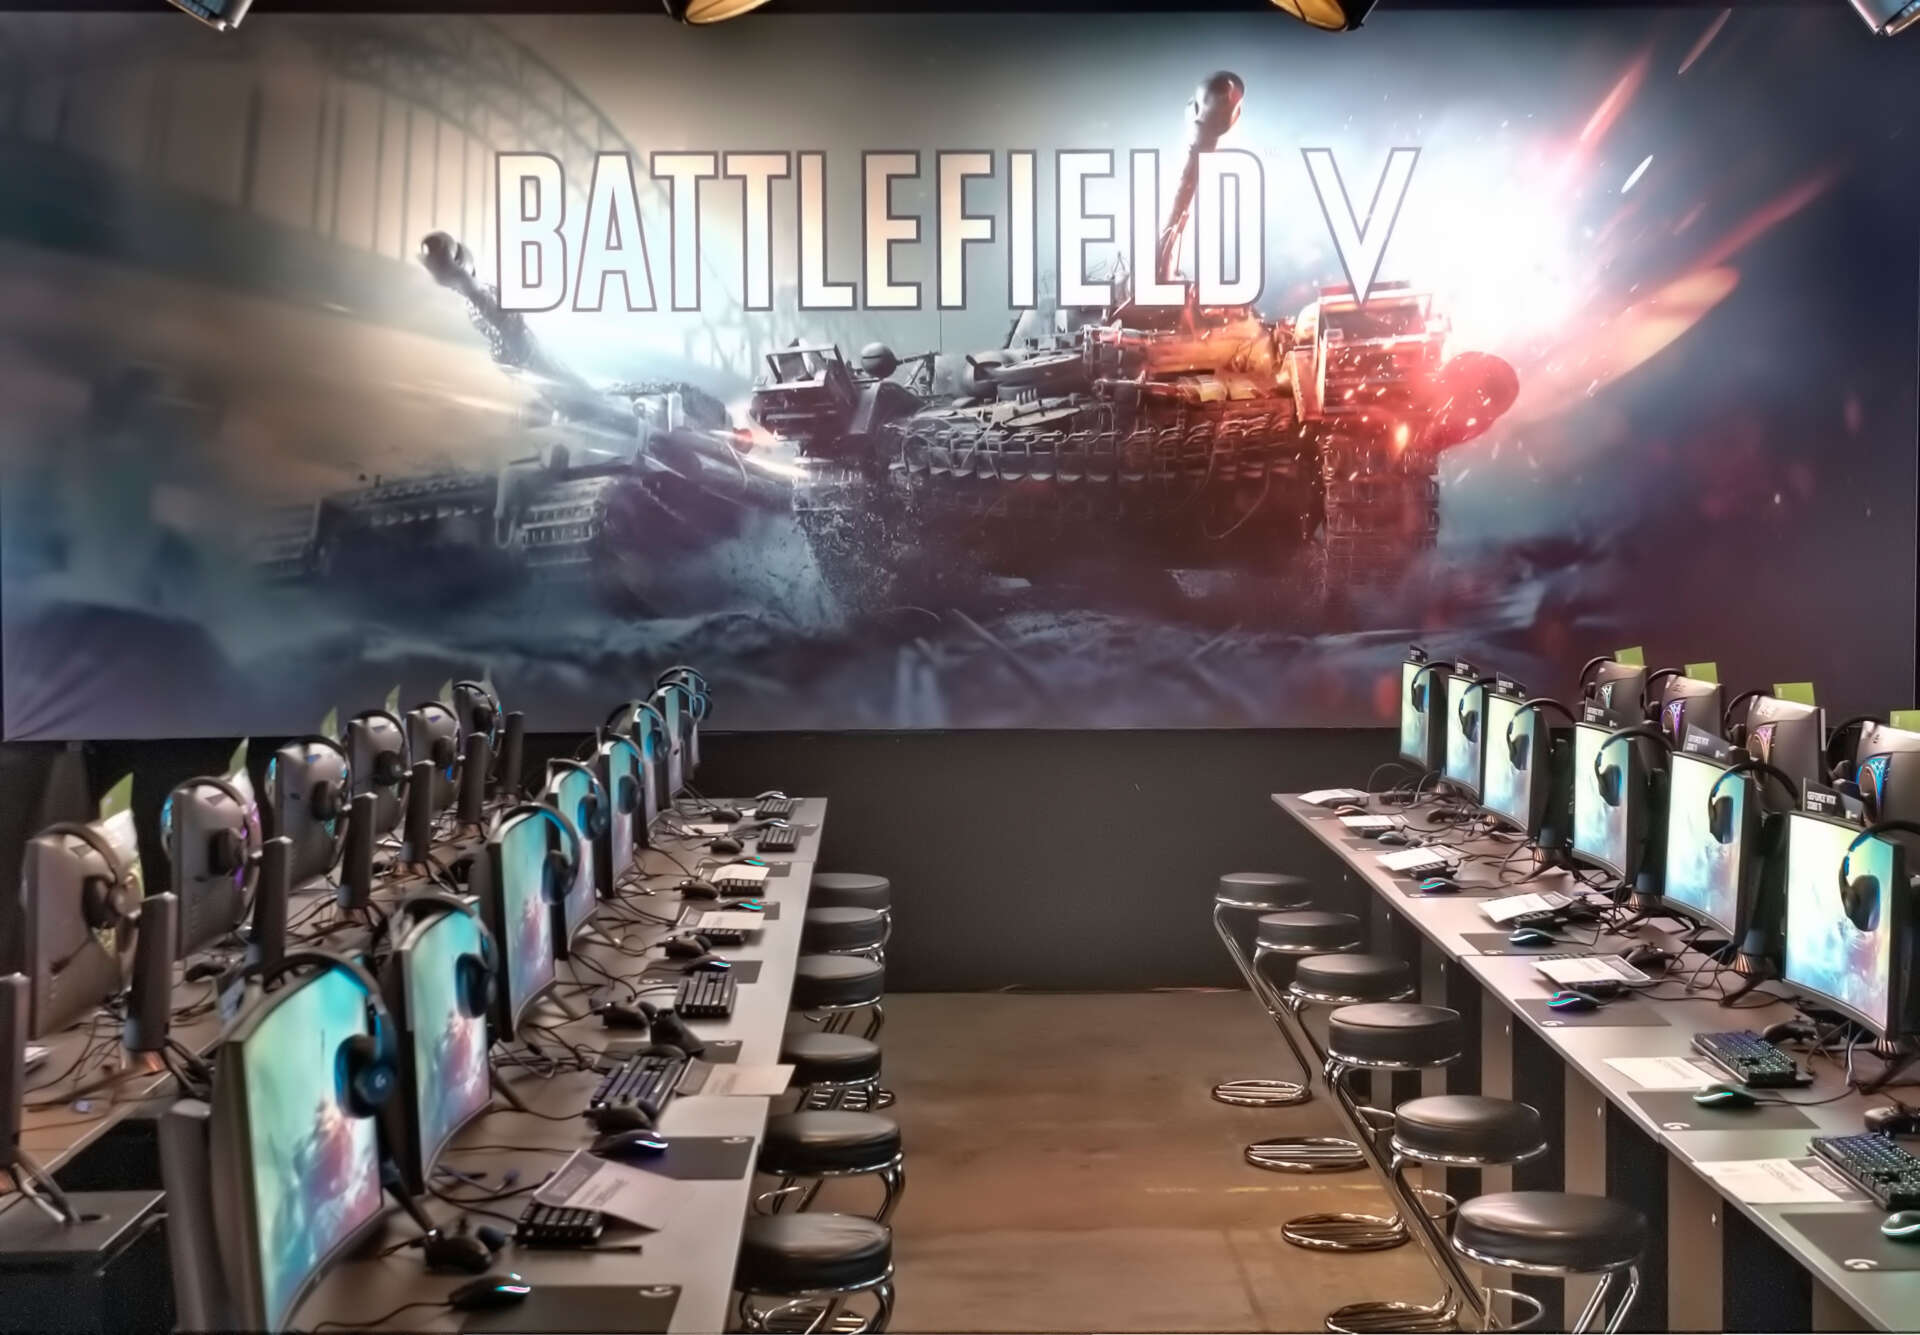 Hinter aufgereihten Gaming-PCs steht eine große Brandingwand, auf der zwei Panzer und ein Battlefield V Schriftzug zu sehen sind